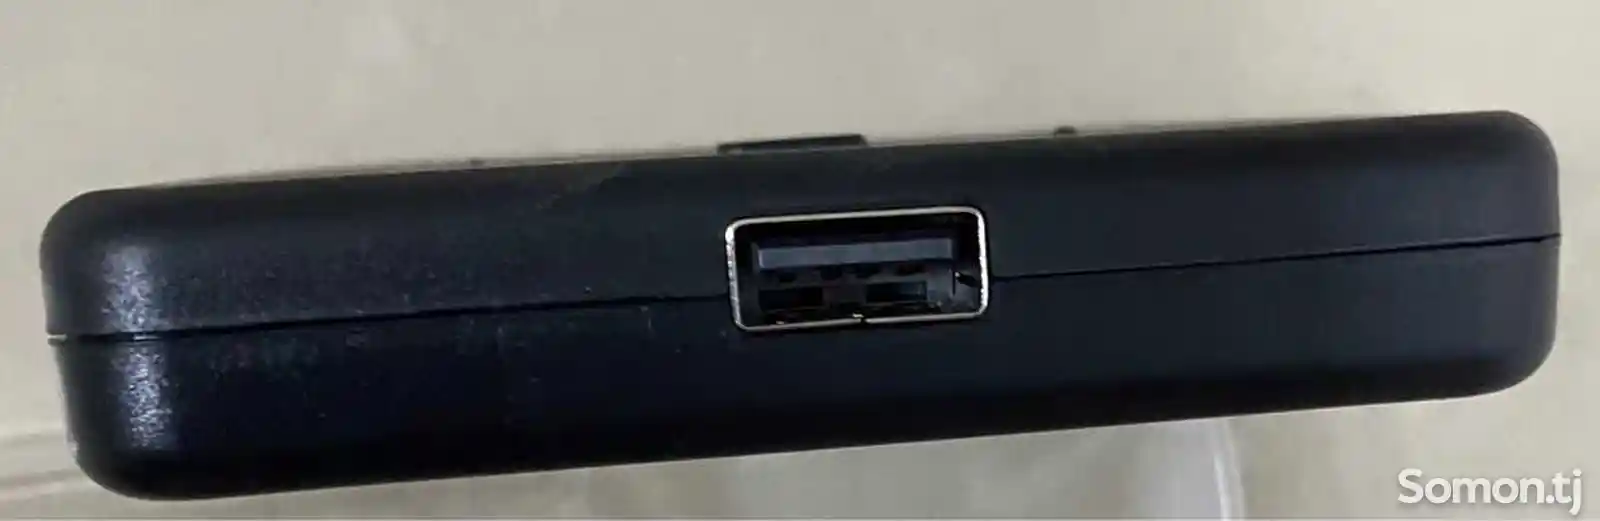 Адаптер HDMI Kvm Switch+Usb-3